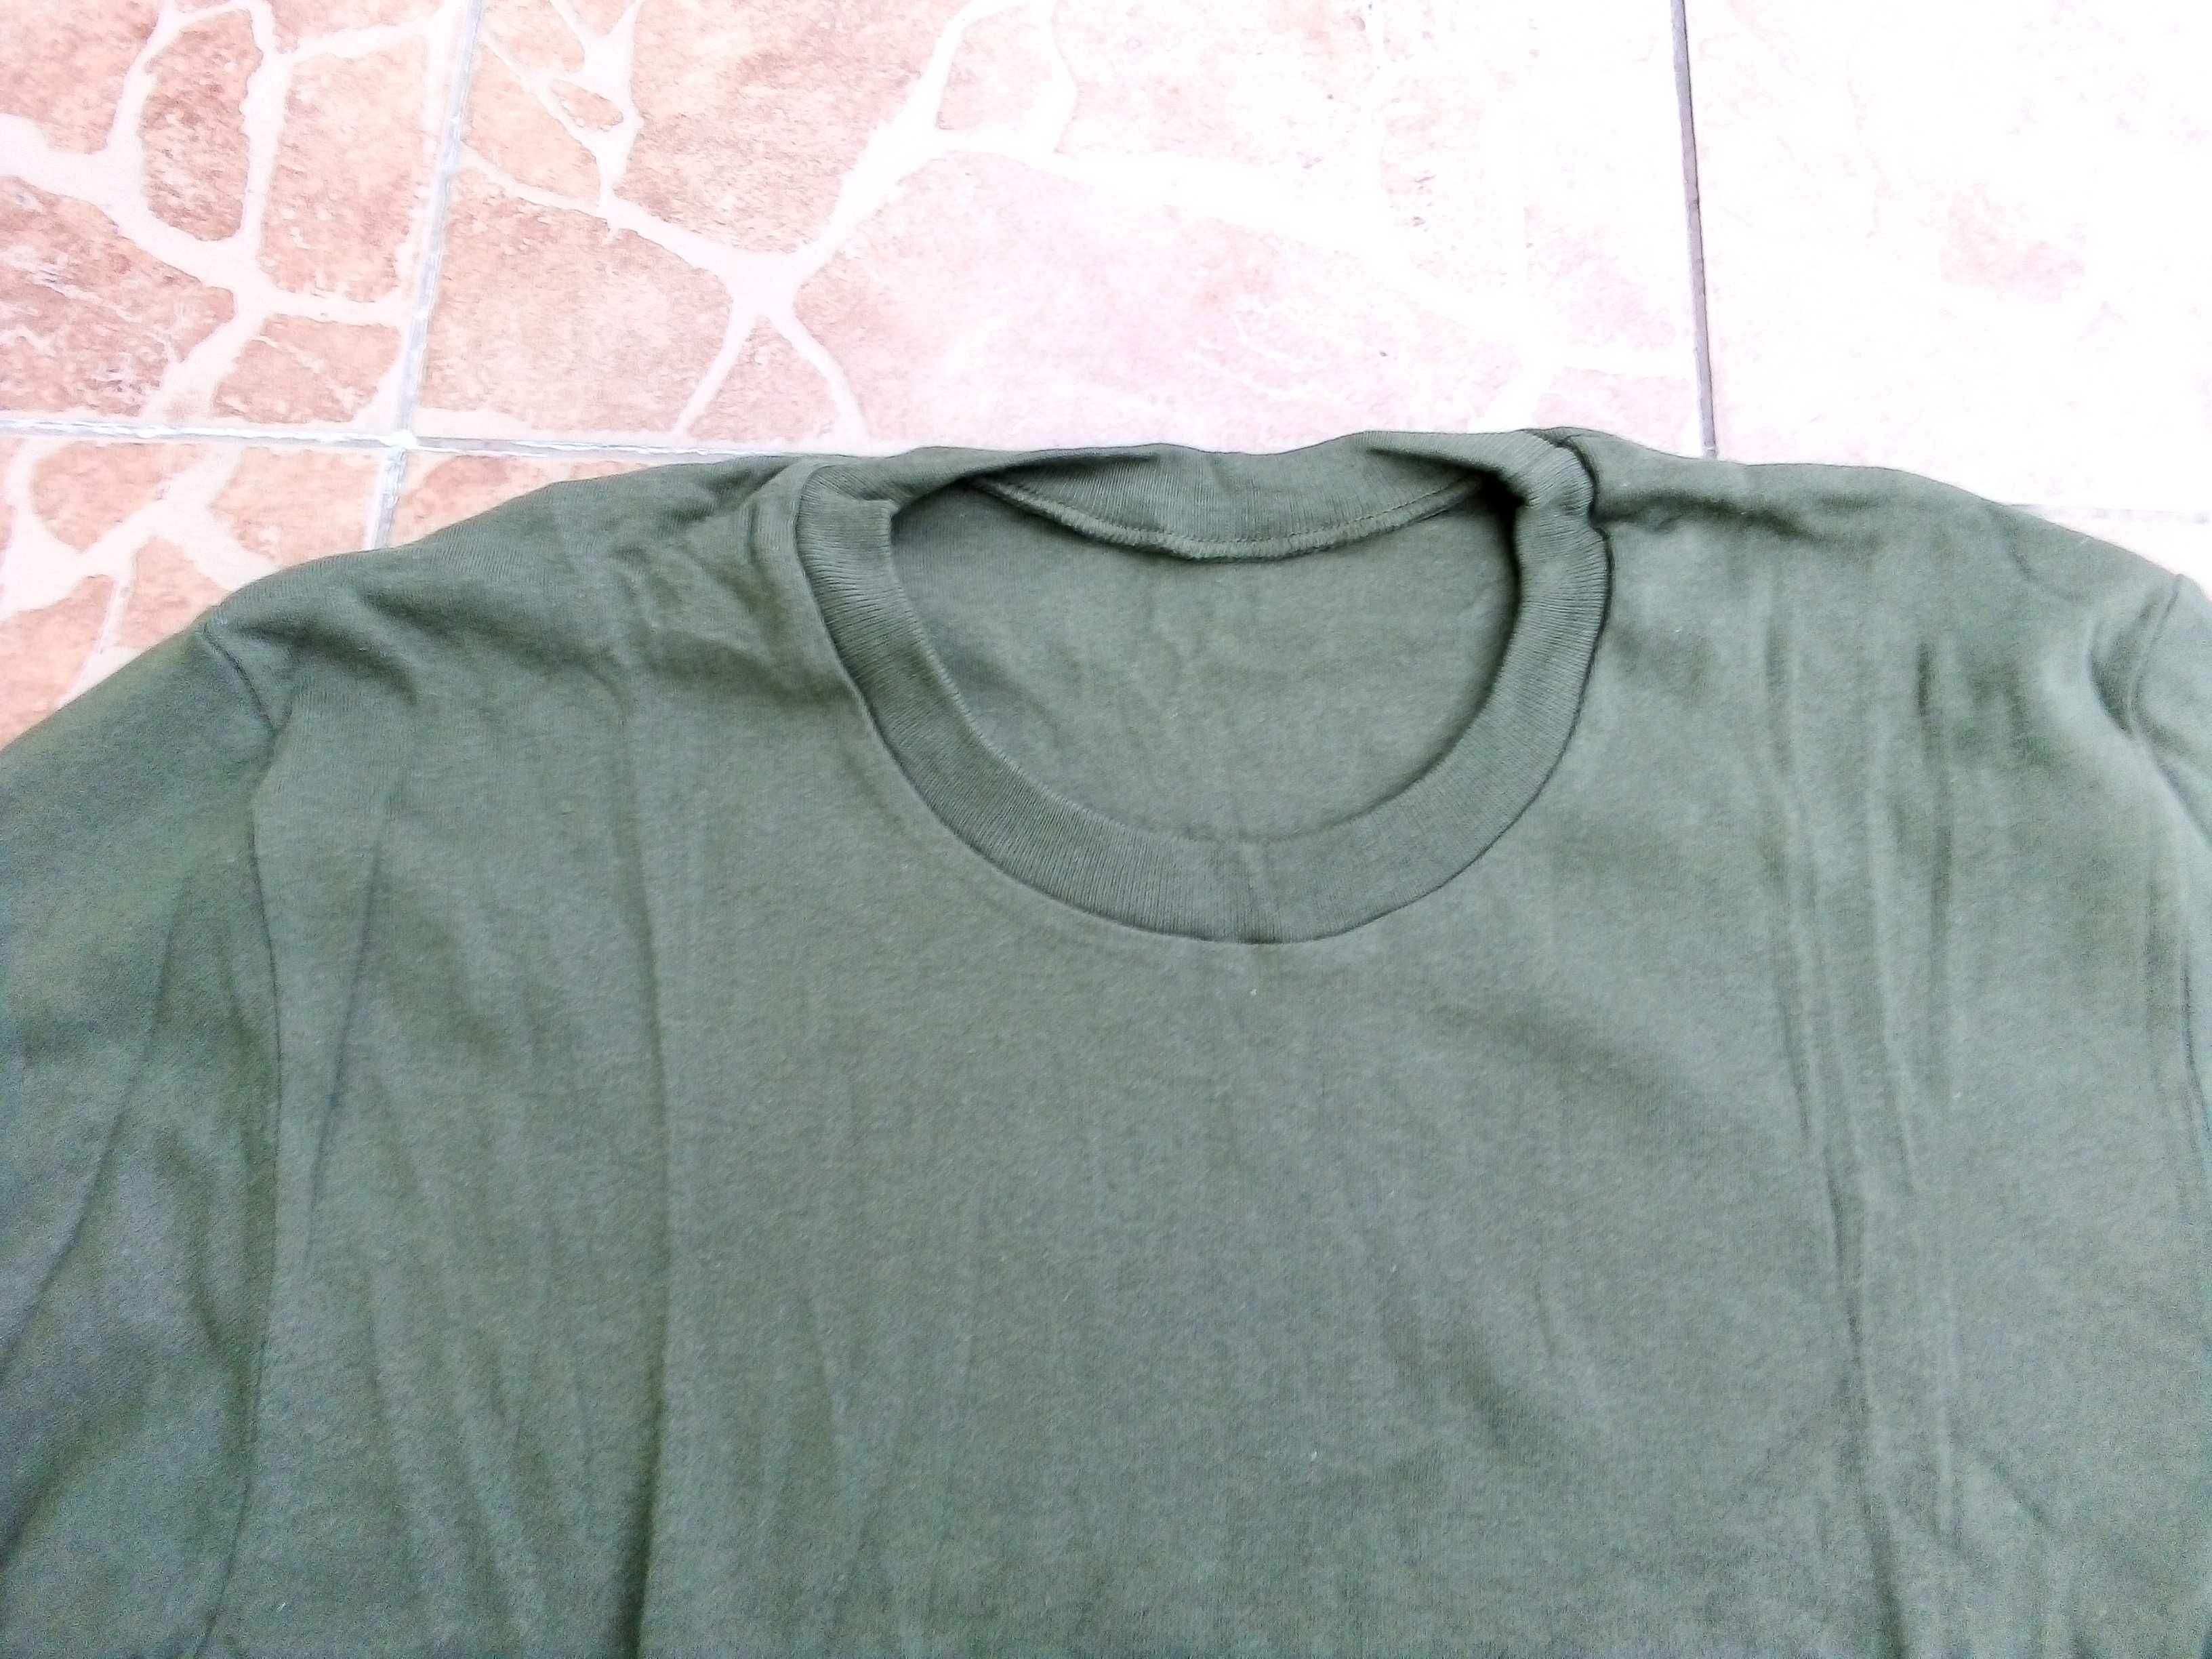 Koszulka z długimi rękawkami koloru khaki wzór 519 Mon roz.6 (L)